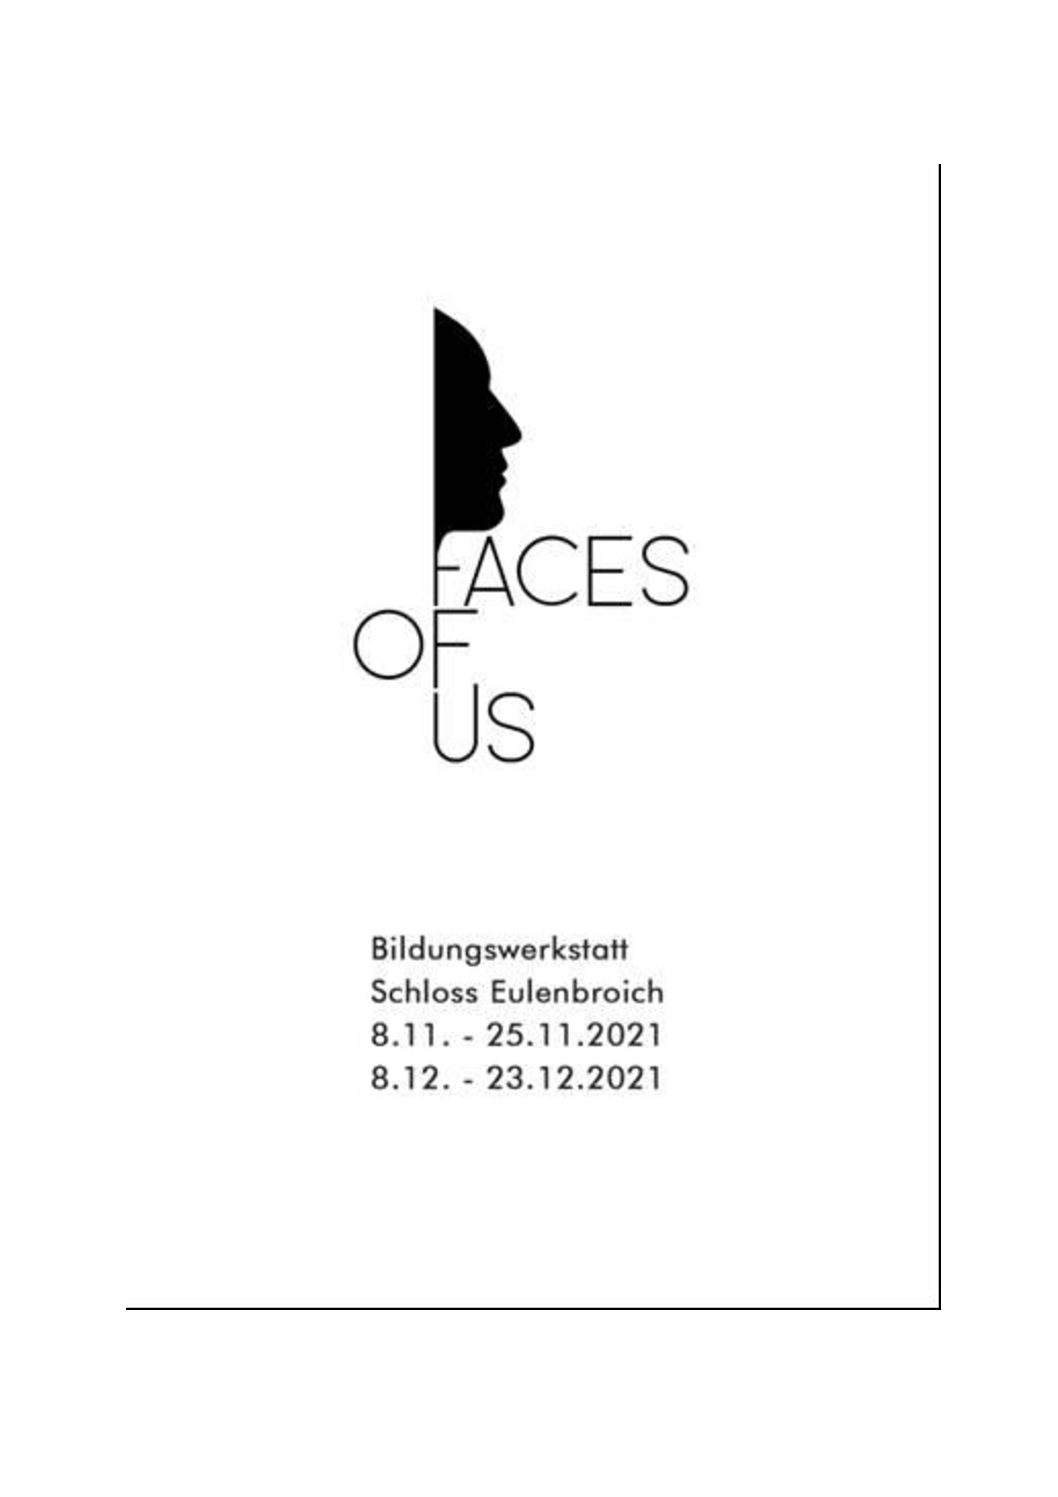 Faces of Us - ein Länder übergreifendes, interkulturelles Kunstprojekt